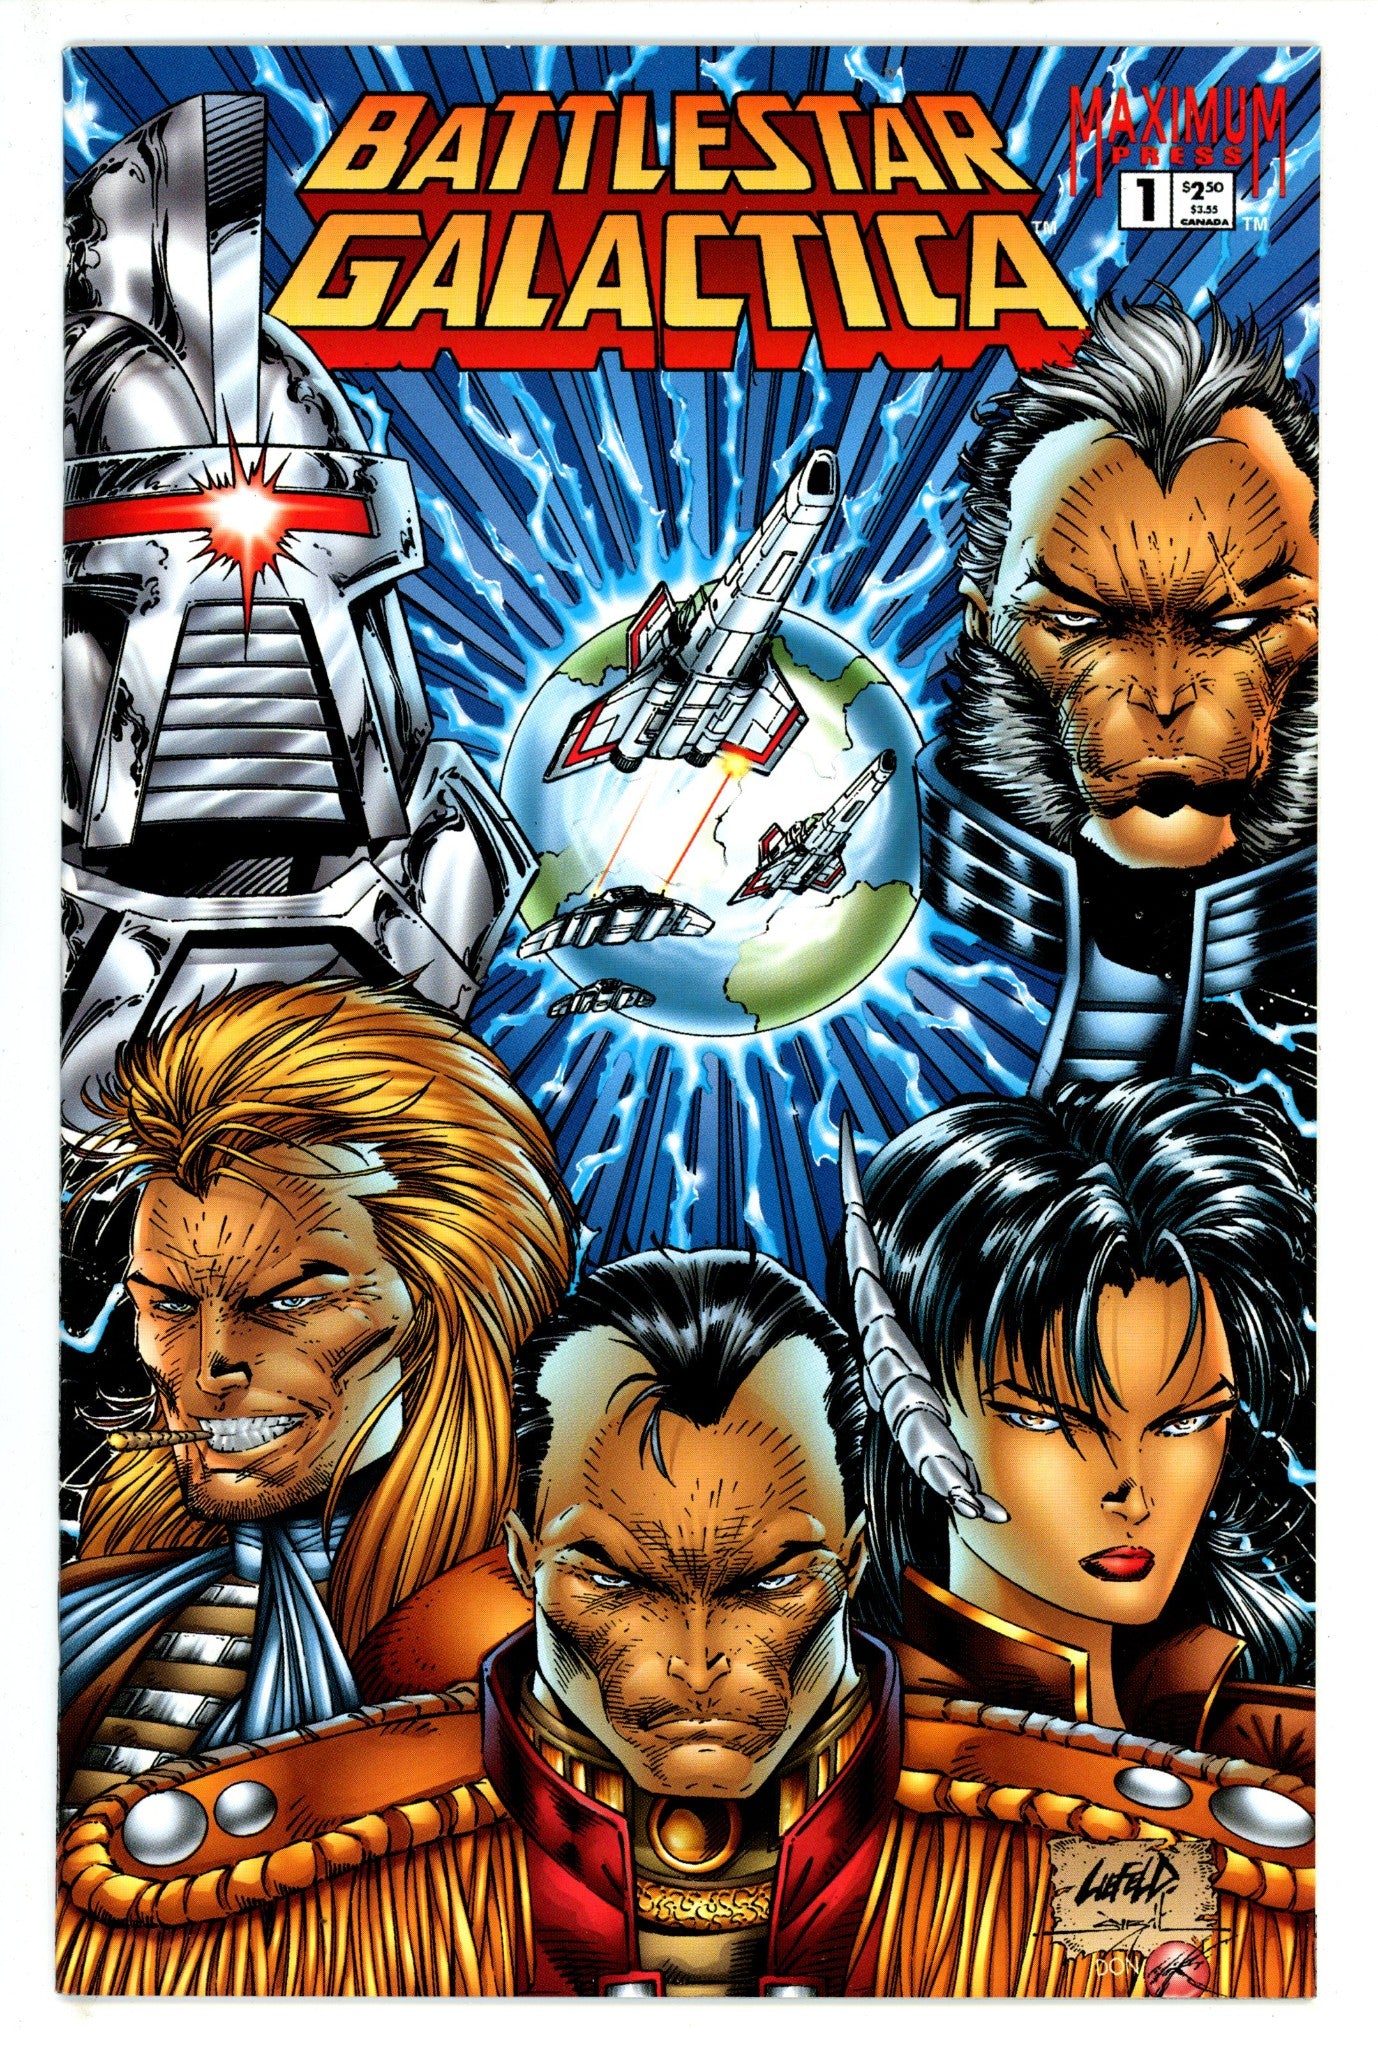 Battlestar Galactica Vol 1 1 (1995)